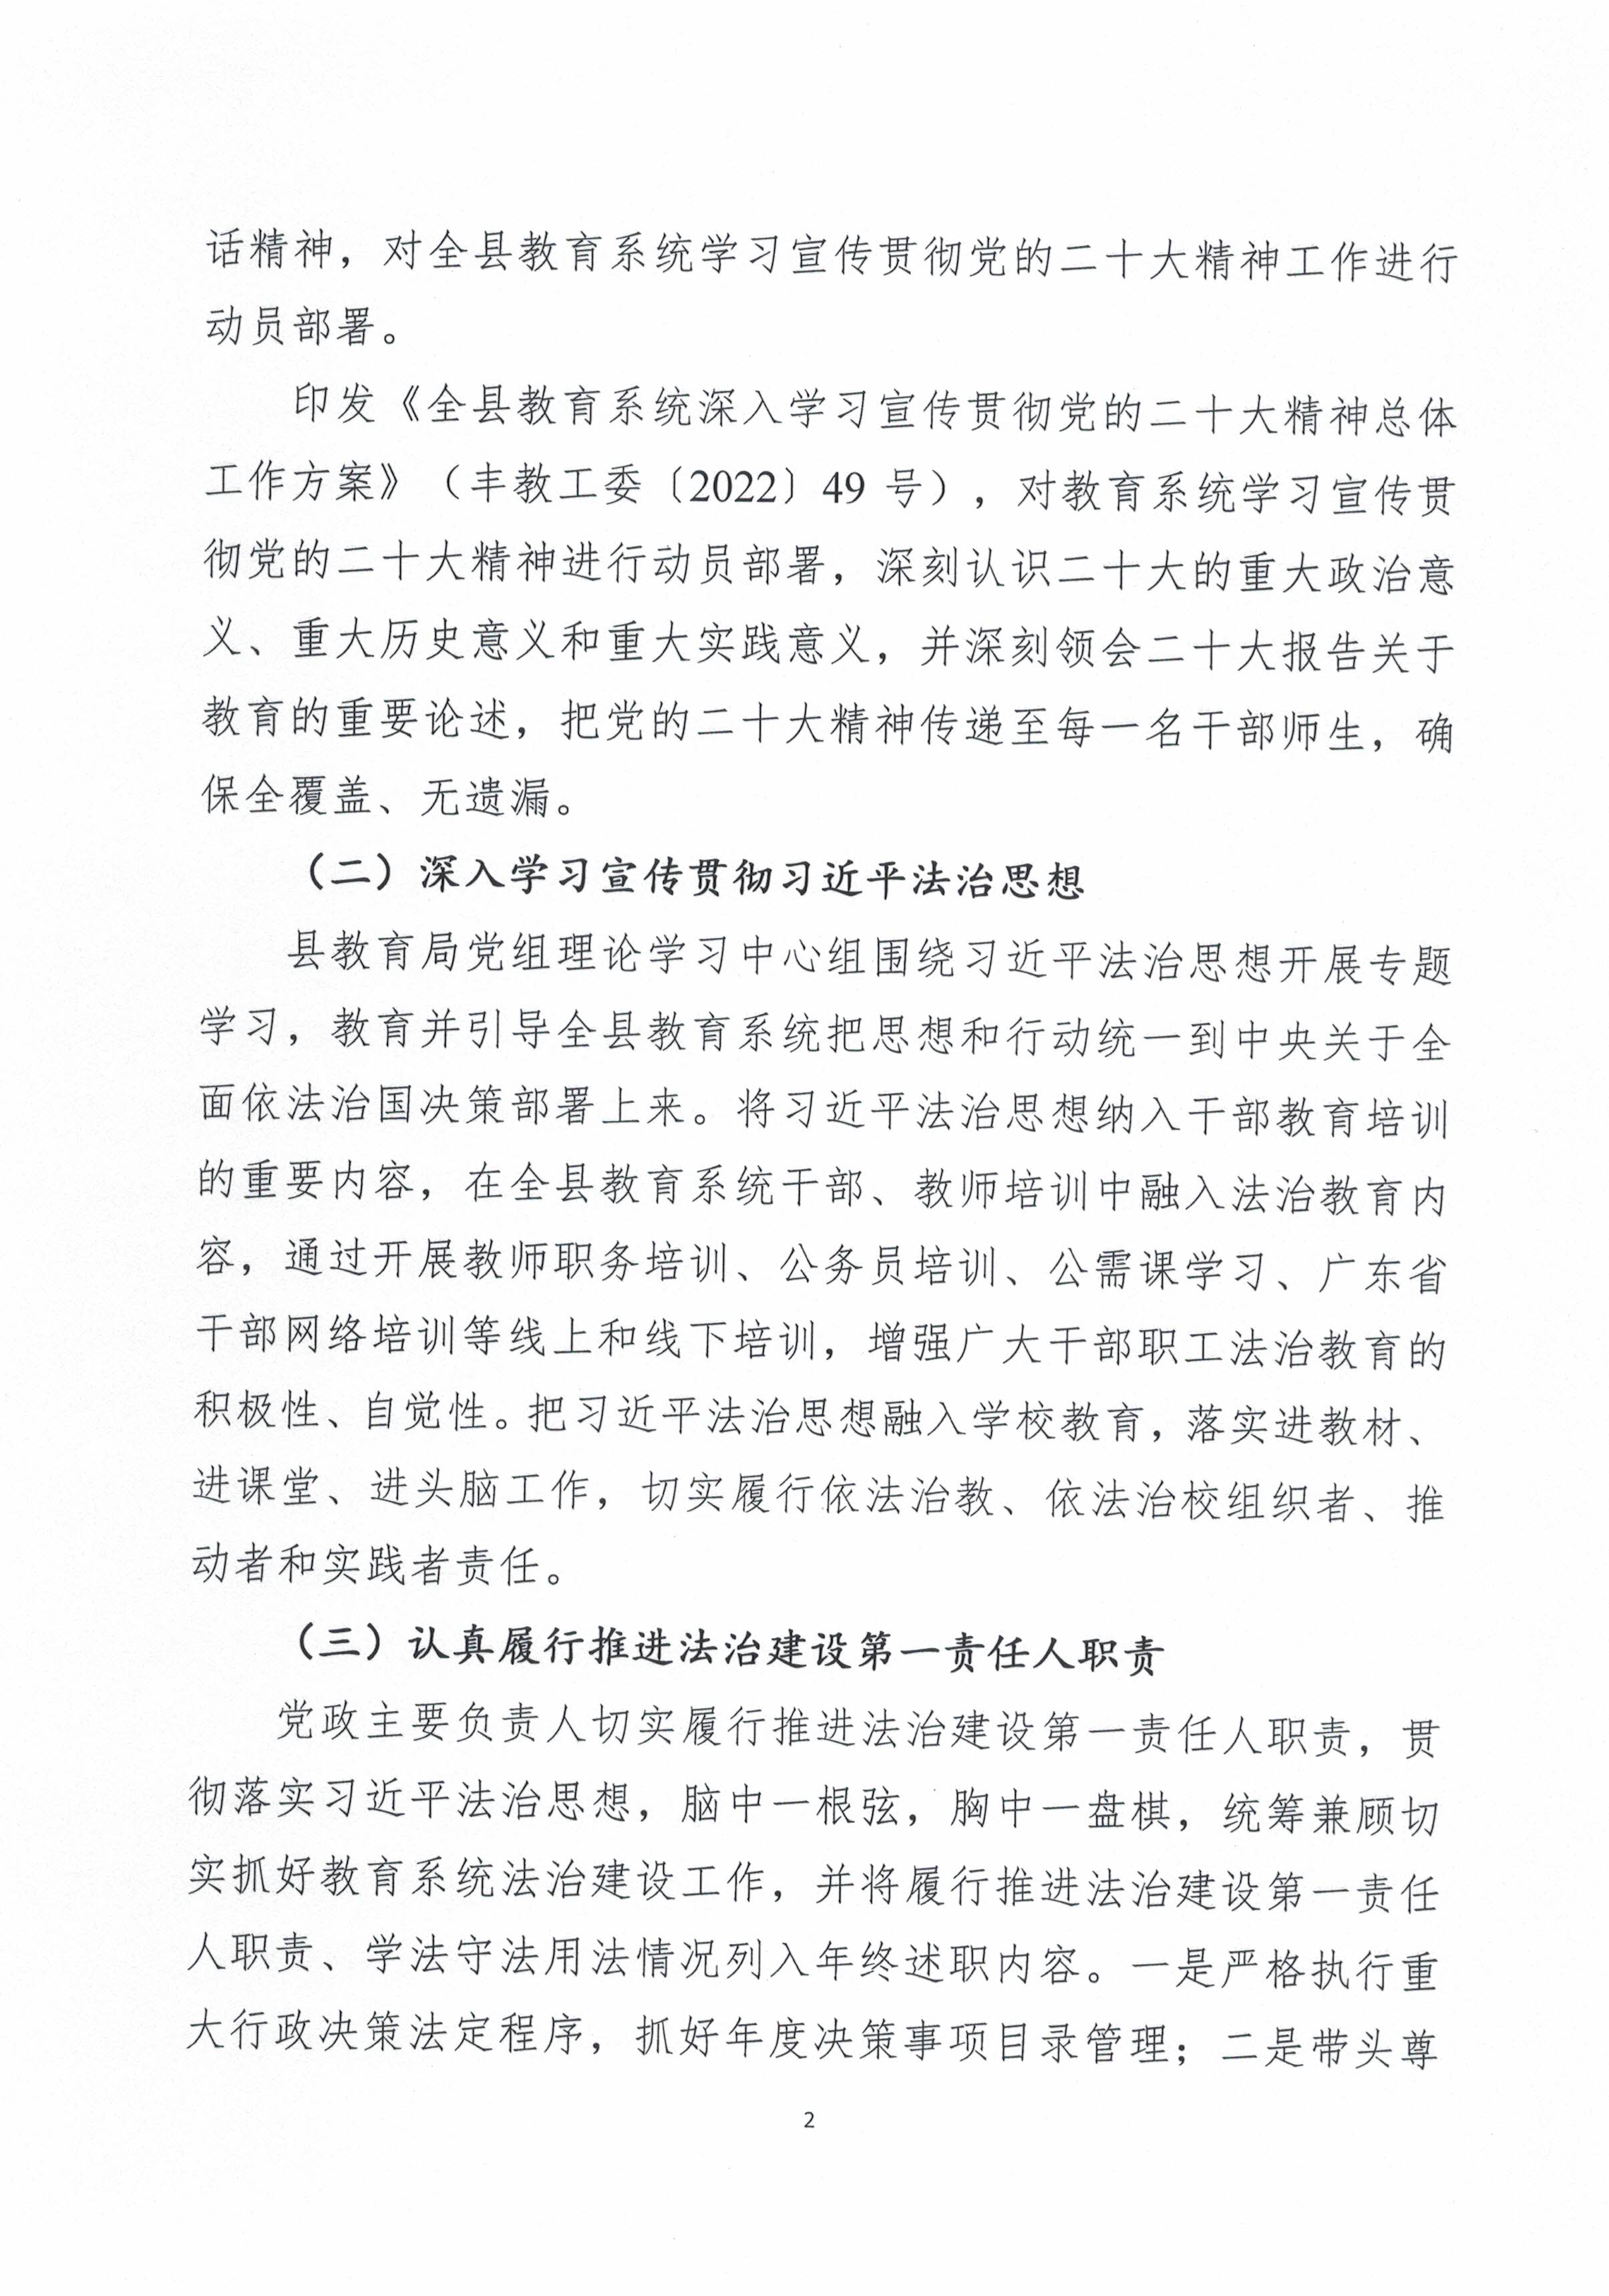 丰顺县教育局2022年法治政府建设年度报告（盖章扫描版）_页面_2.jpg